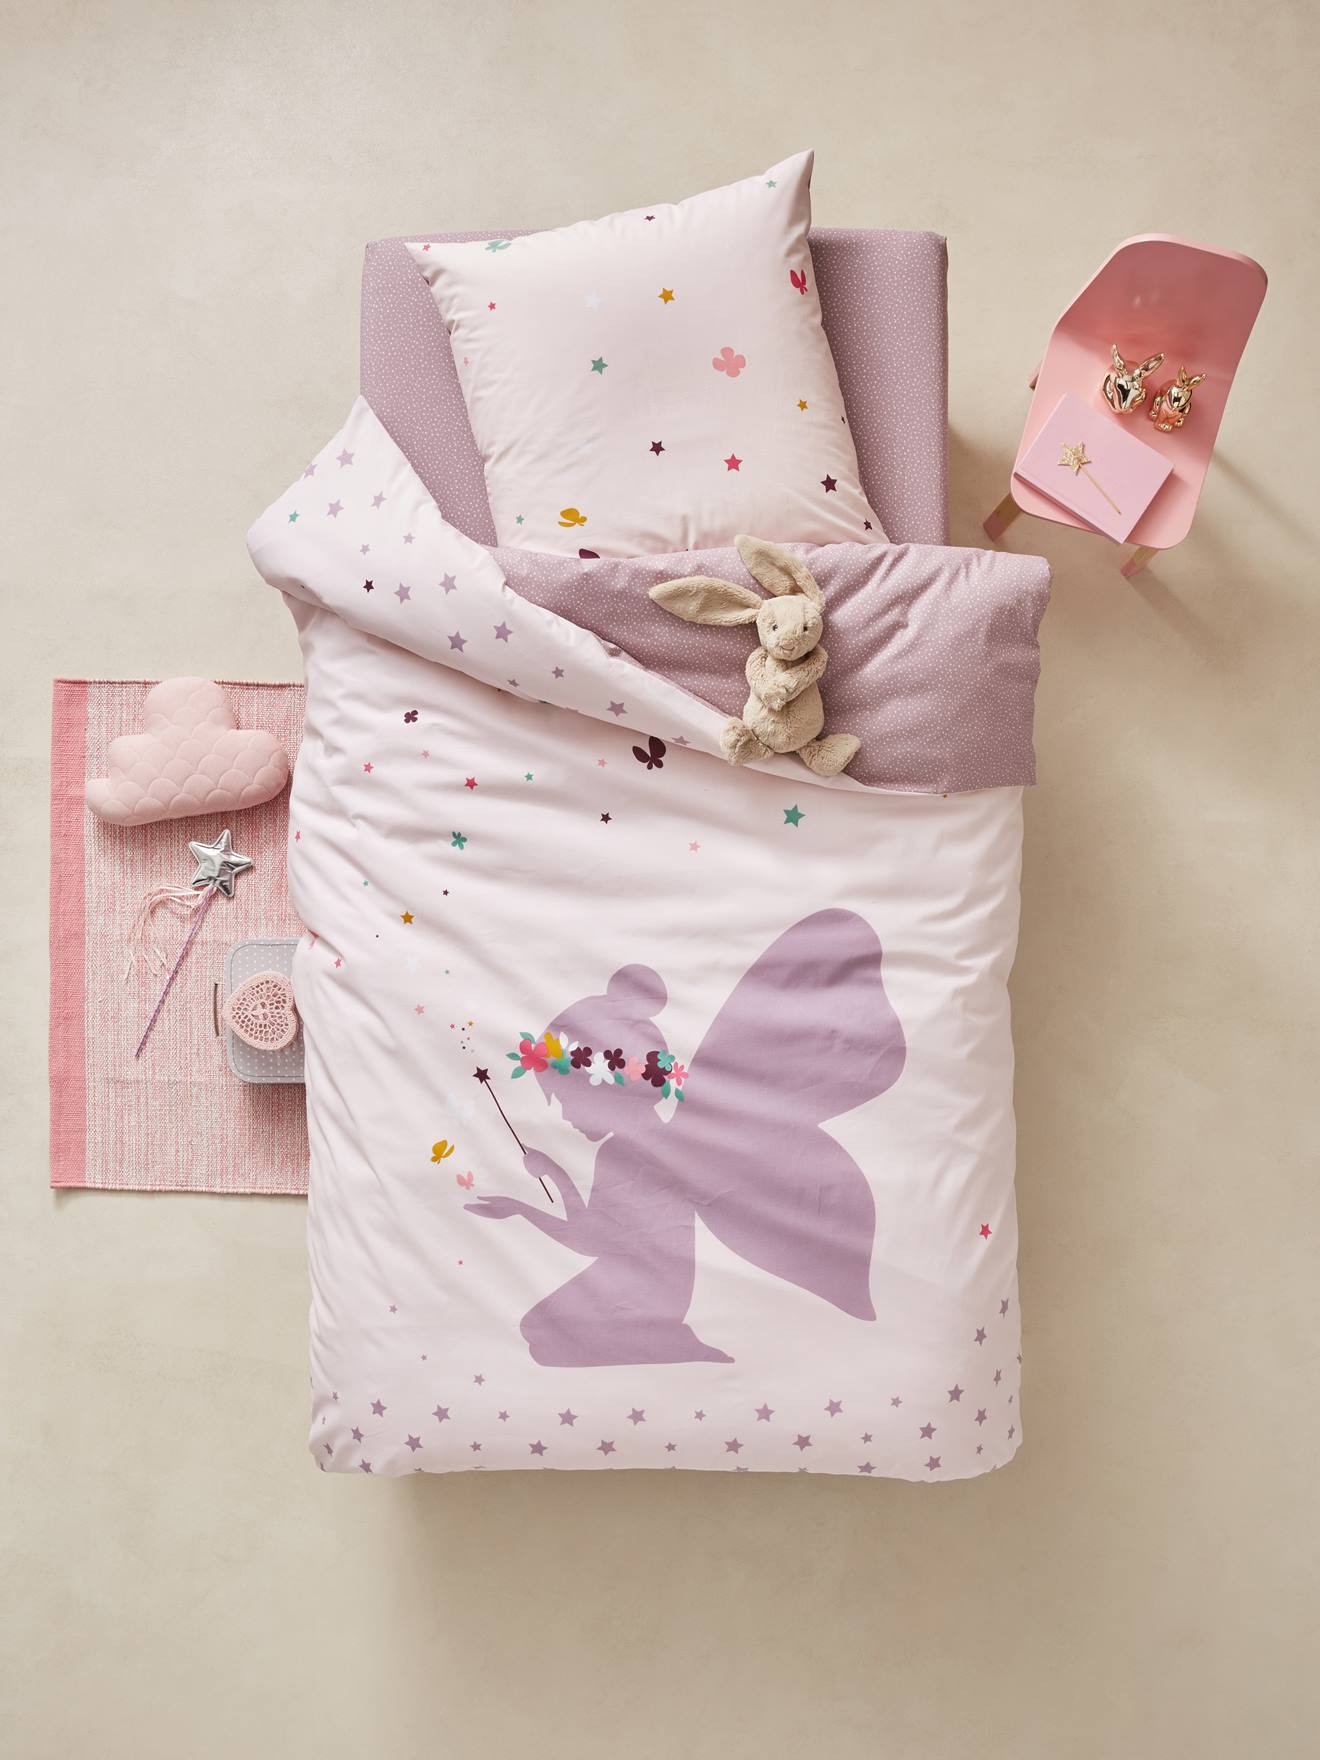 fairy baby bedding